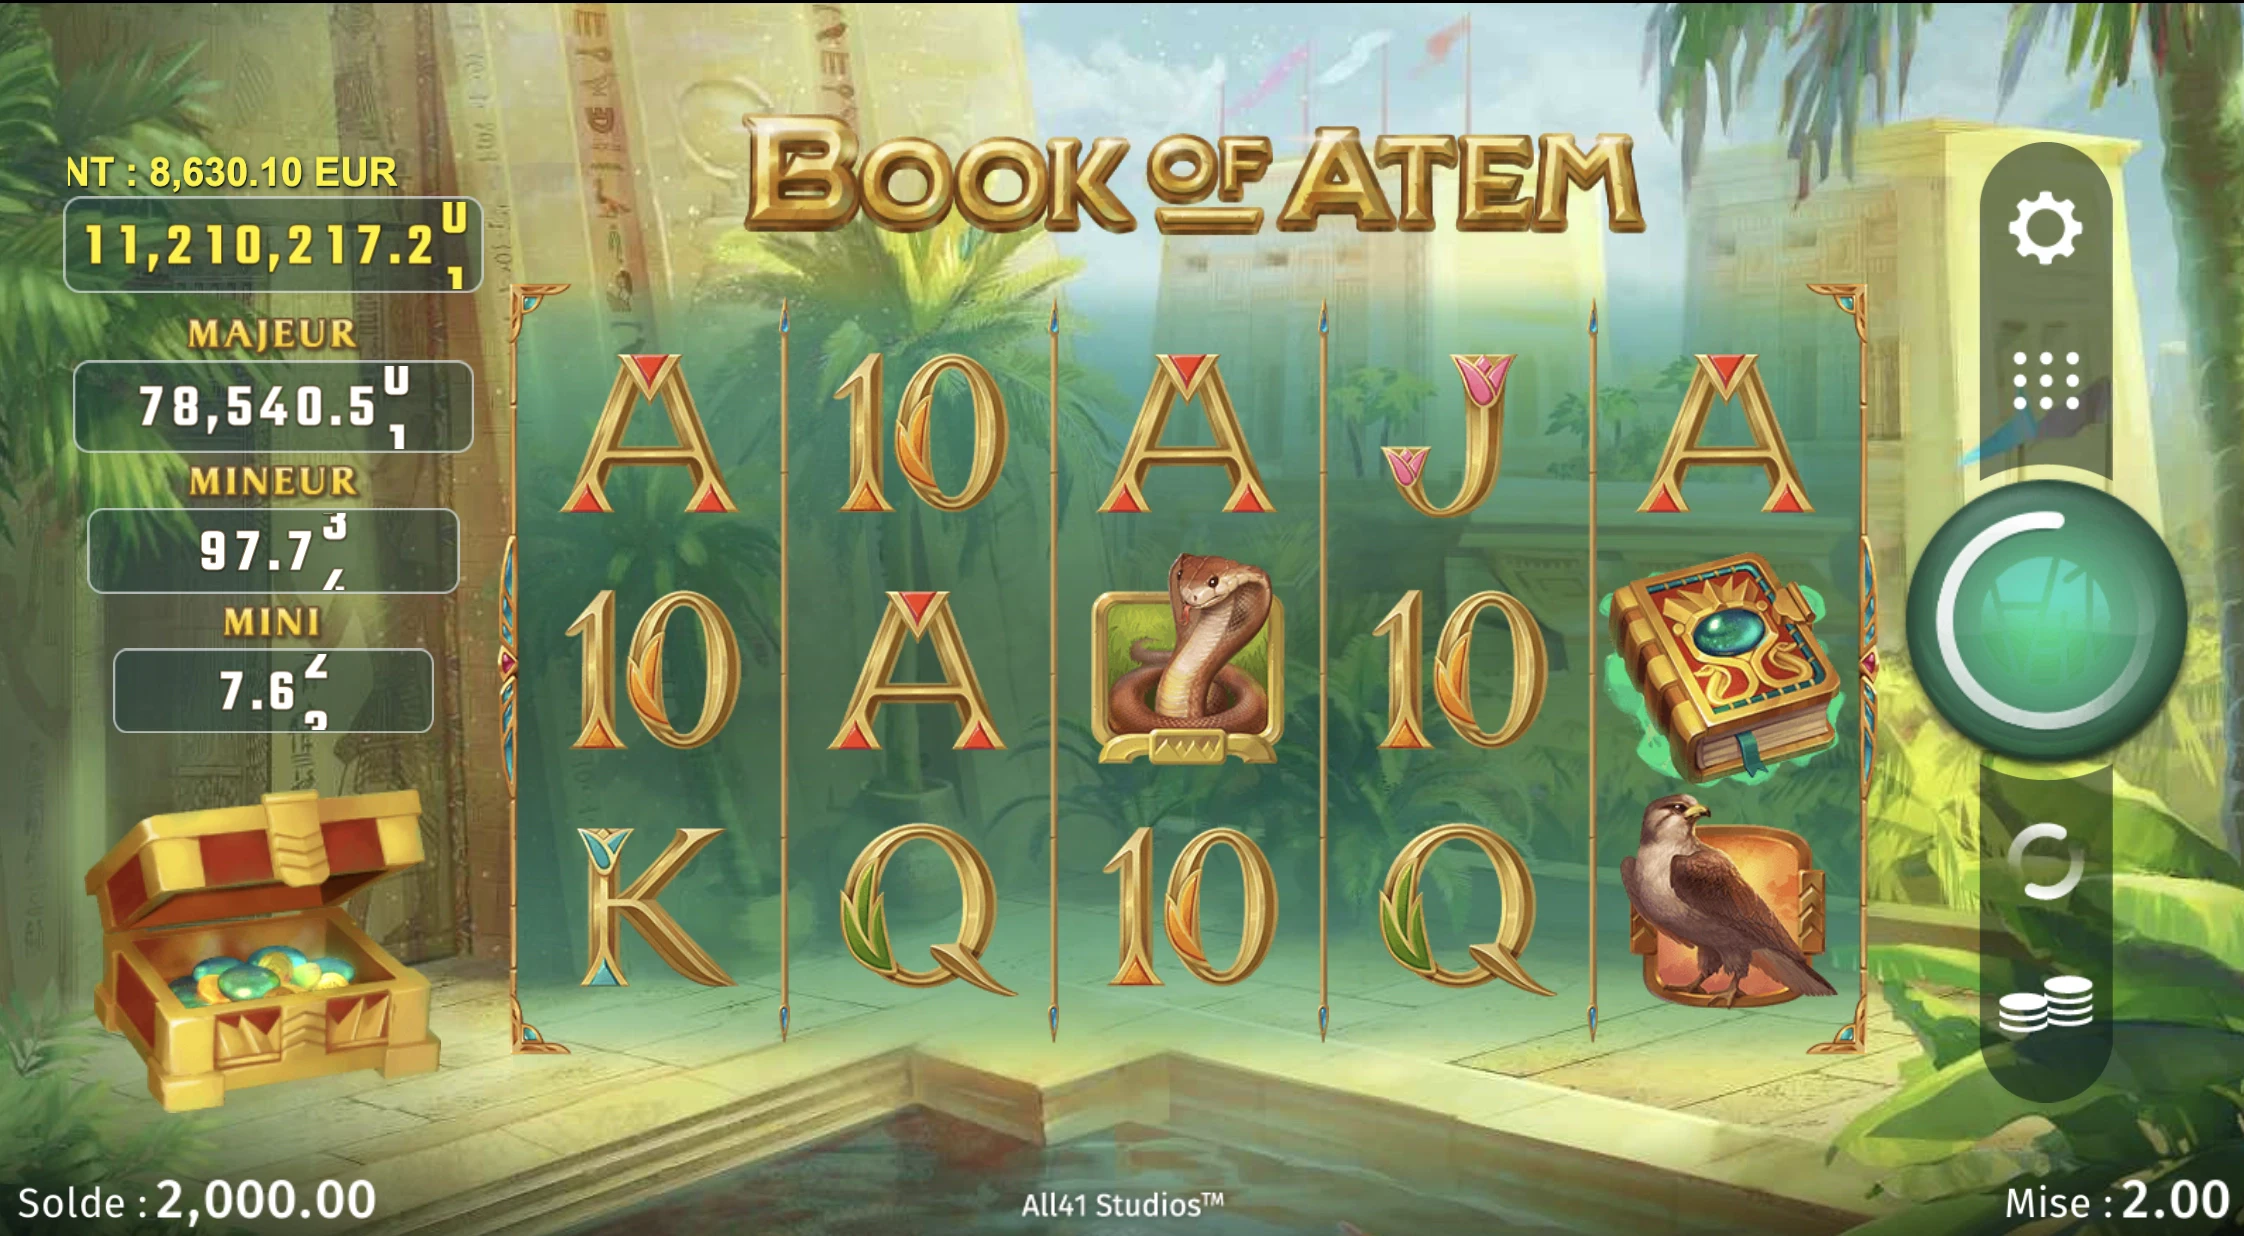 Book of Atem wowpot est une machine a sous sur laquelle vous pourrez gagner jusqu’à 12 millions d’euros si la chance est de votre côté